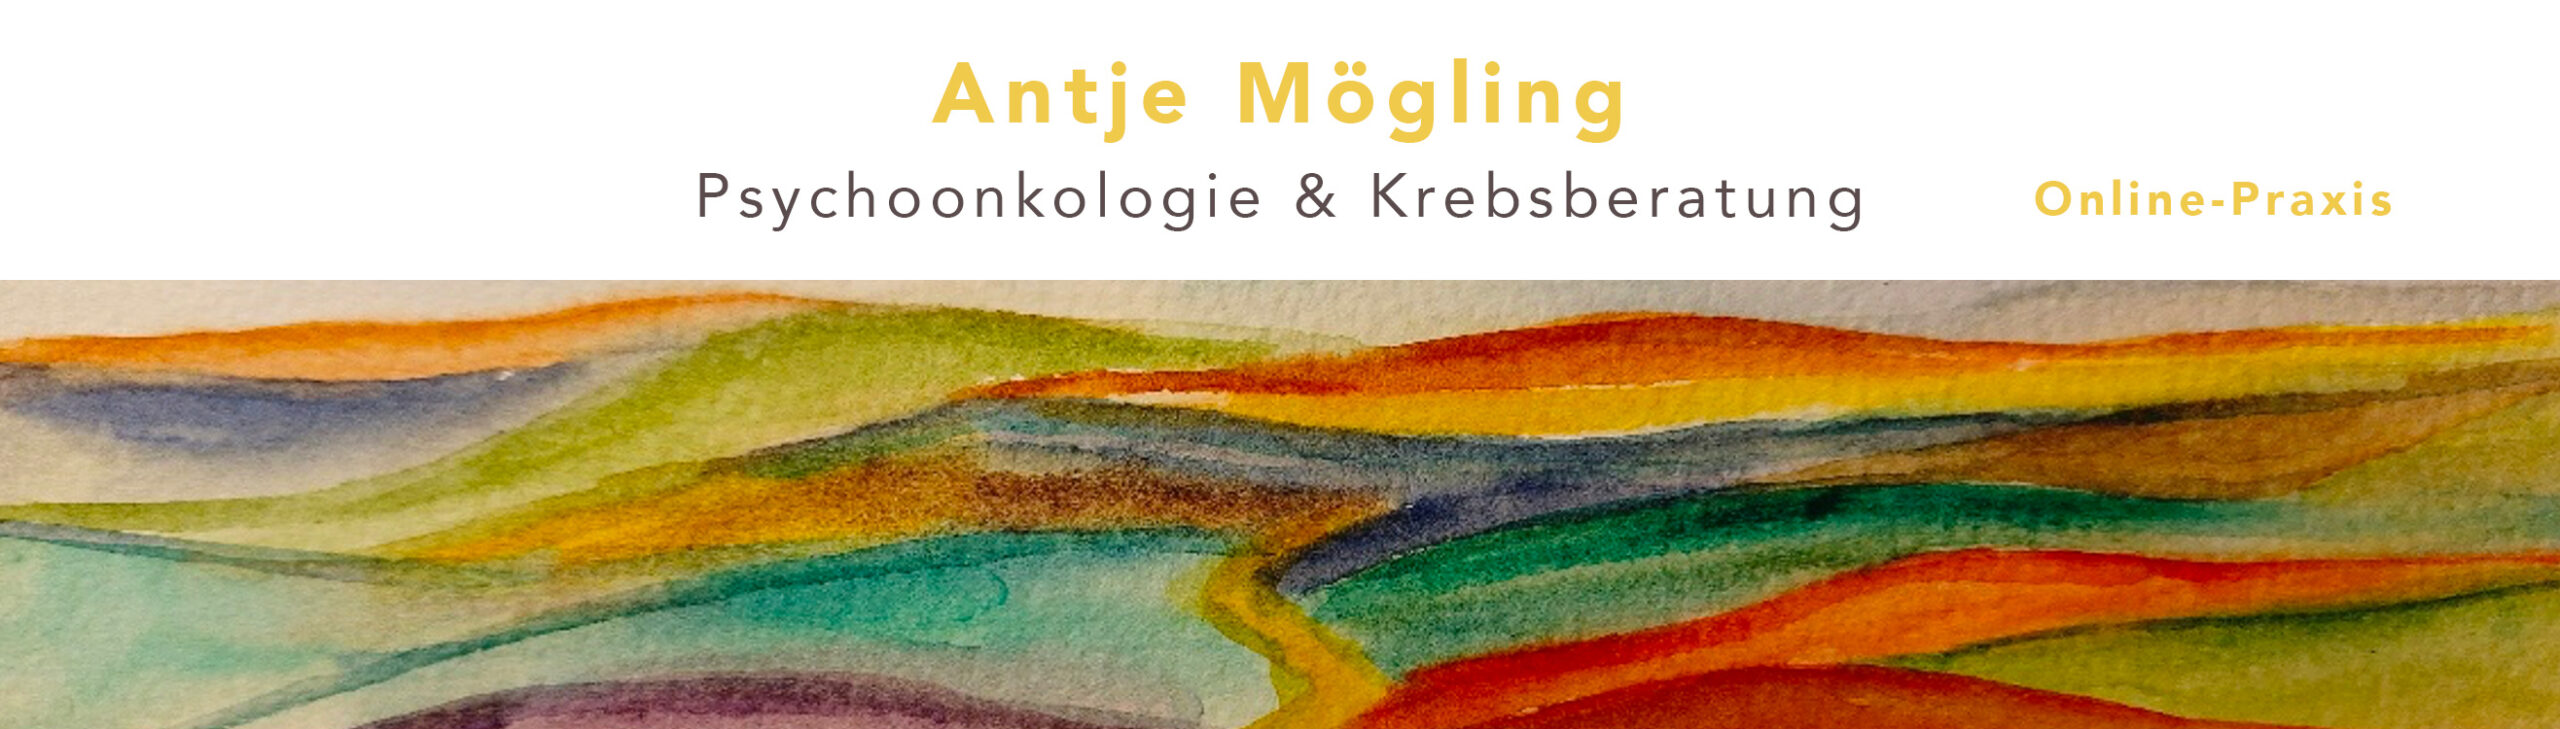 Antje Mögling Psychoonkologie & Krebsberatung